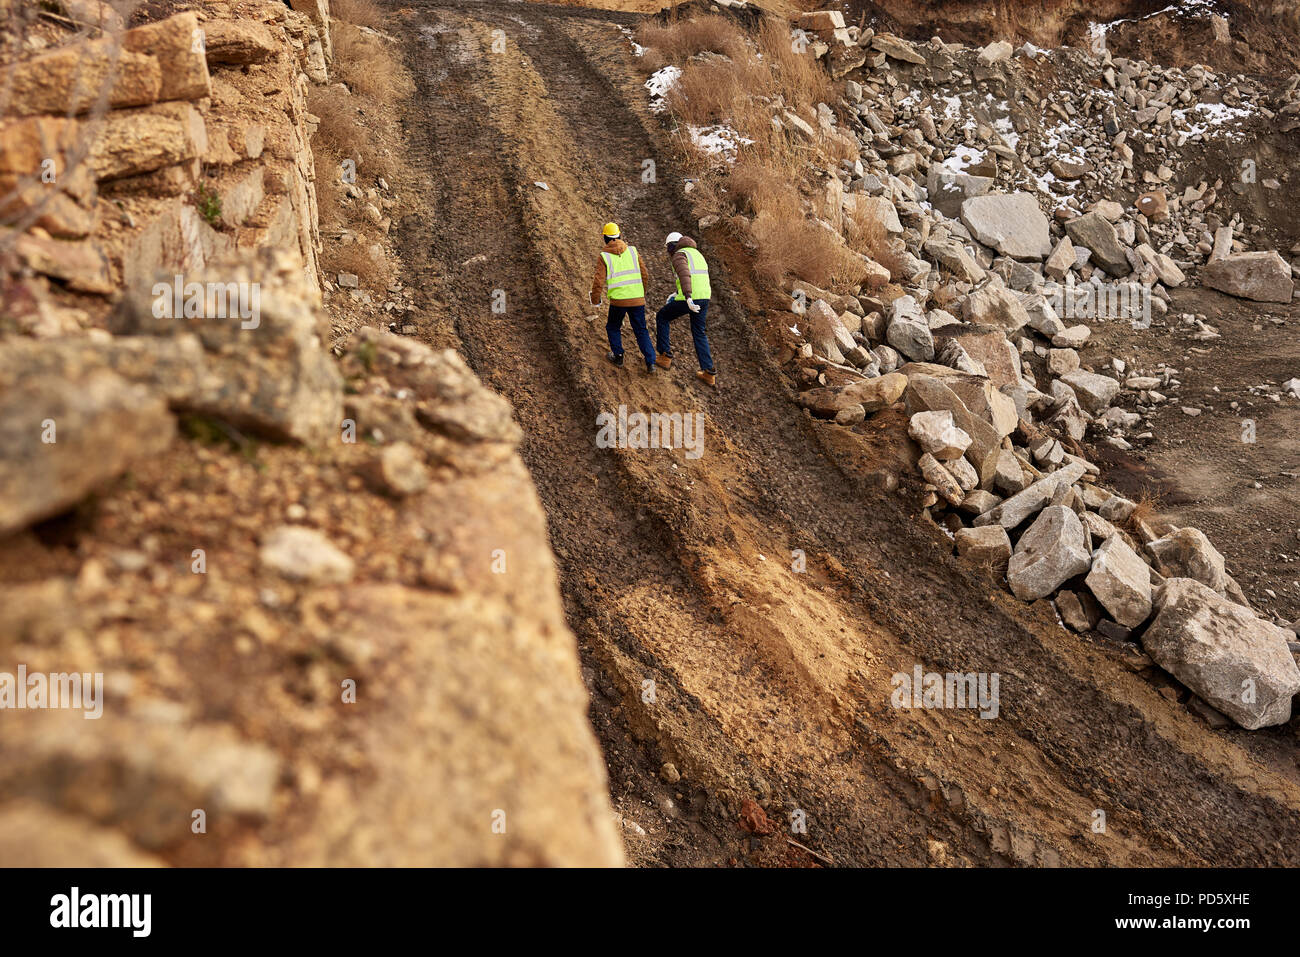 Prise de vue au grand angle de deux ouvriers de l'industrie portant des vestes réfléchissantes marche dans la saleté sur chantier minier, copy space Banque D'Images